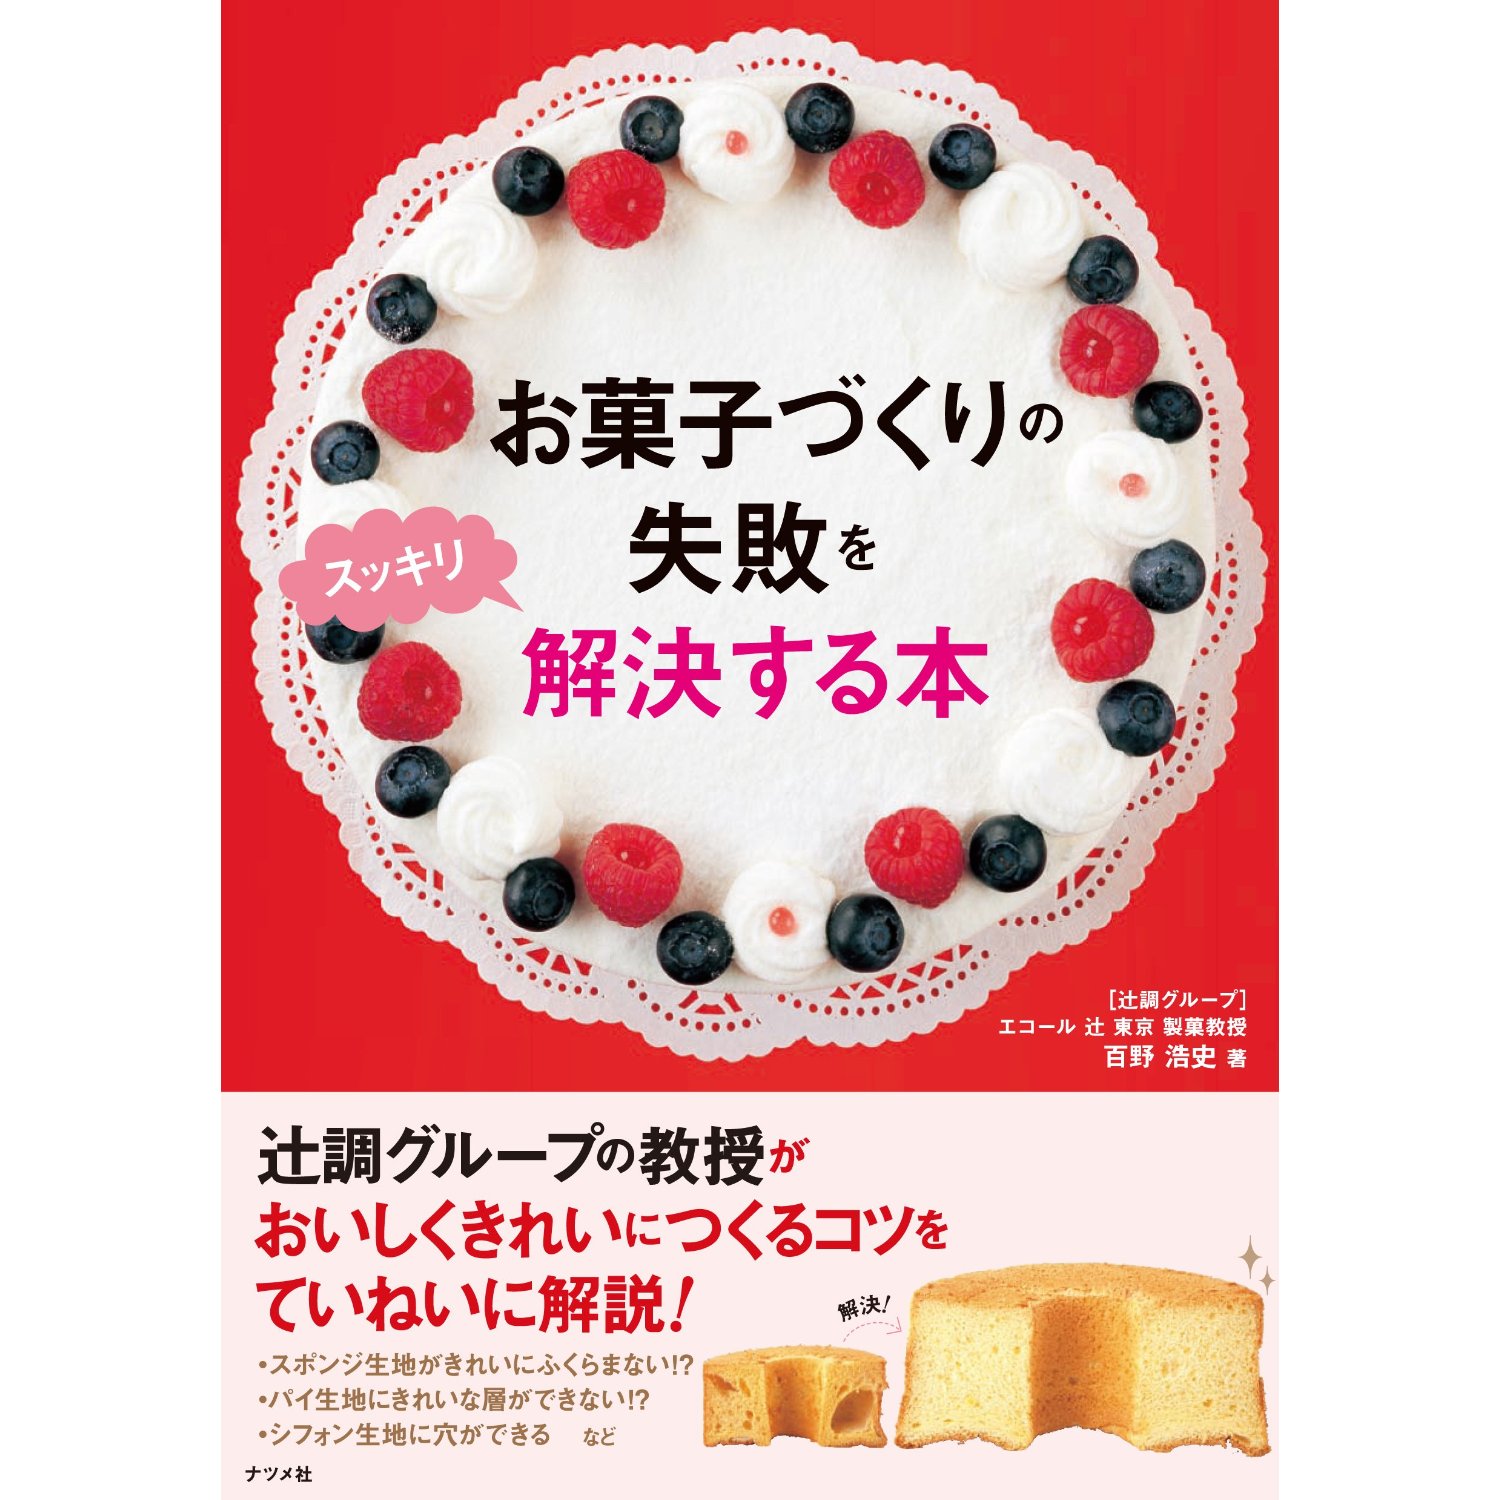 「お菓子づくりの失敗をスッキリ解決する本」カバー